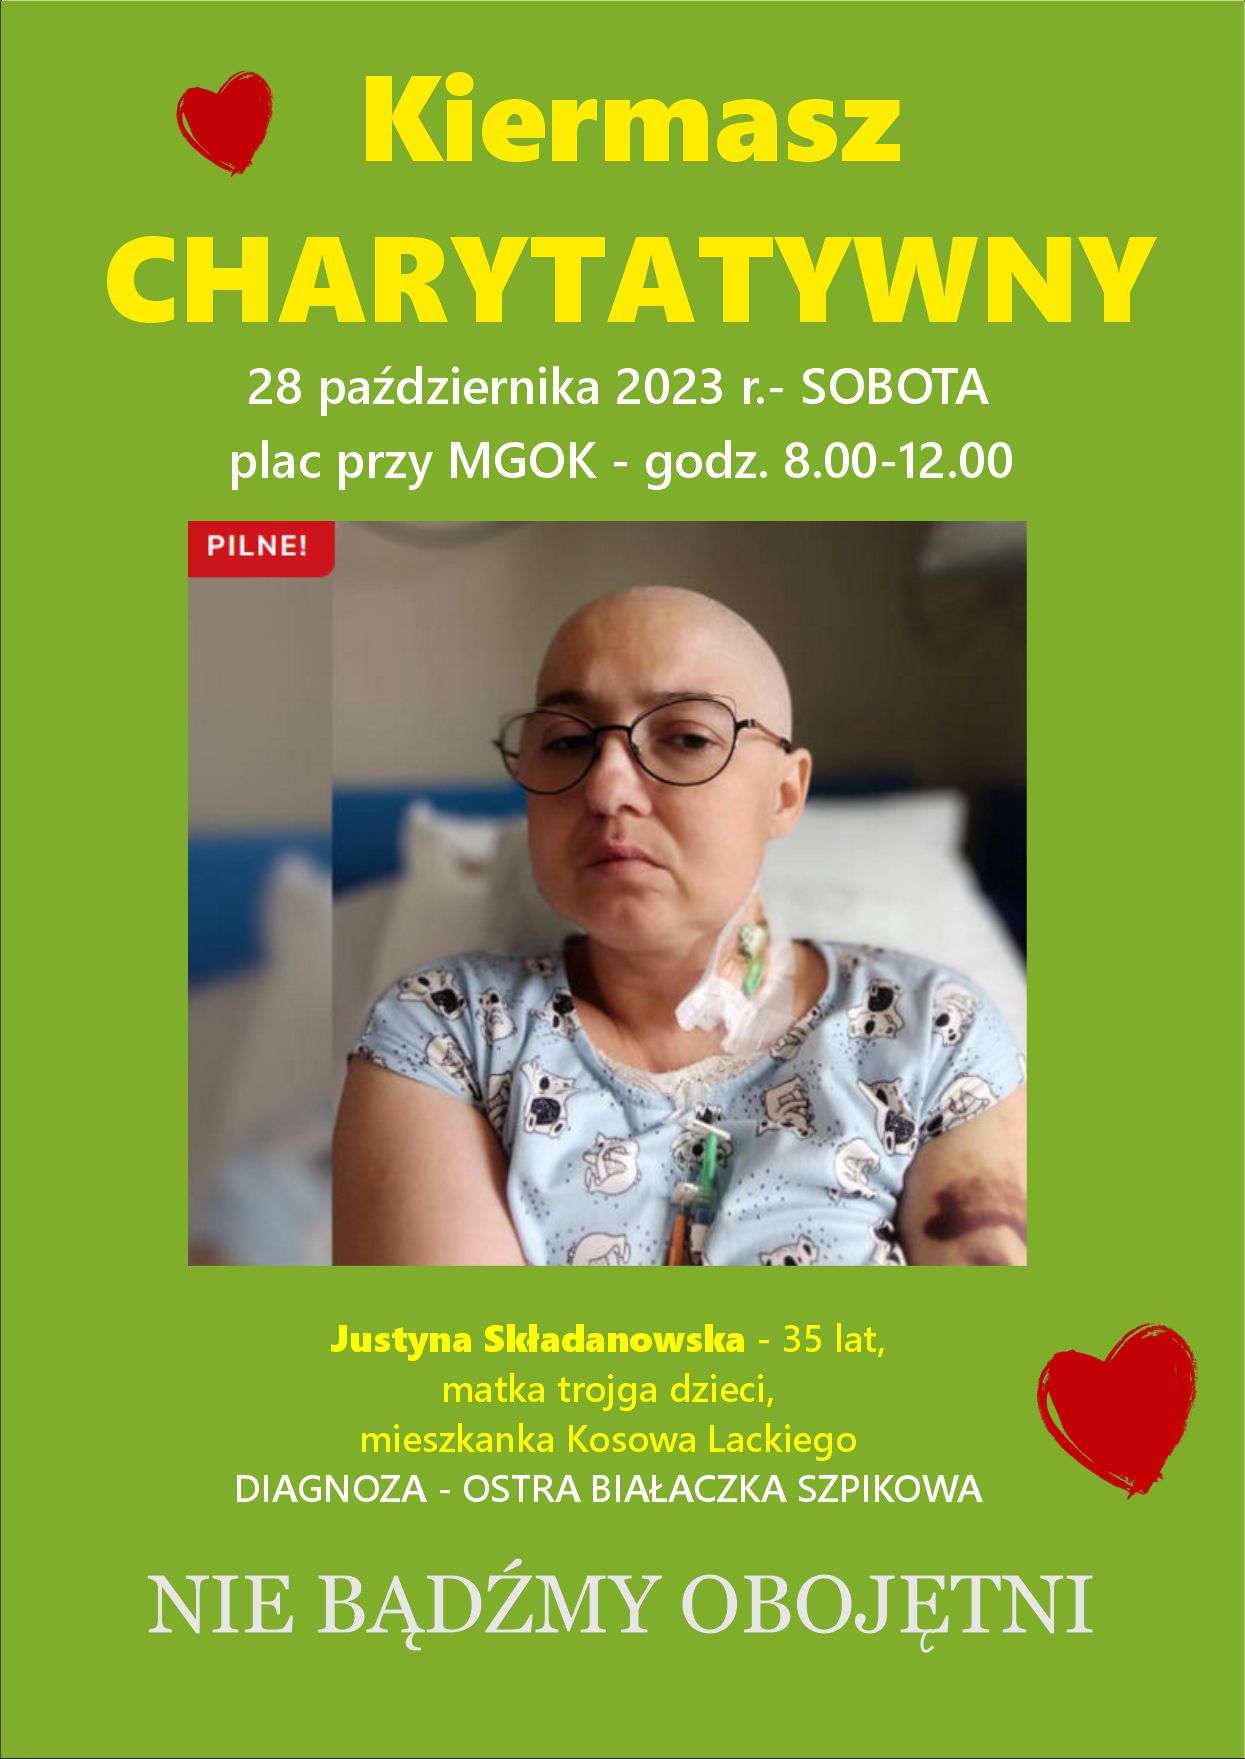 Kiermasz charytatywny dla Justyny Składanowskiej - plakat